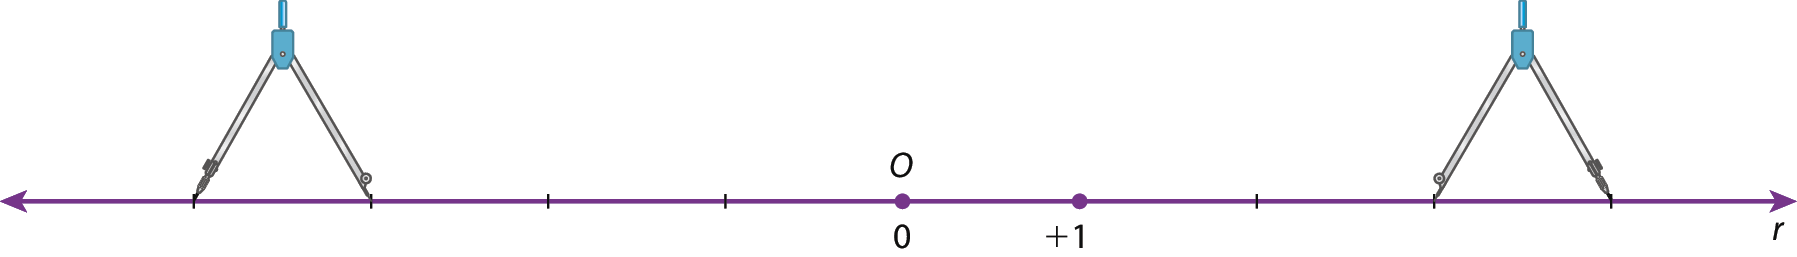 Ilustração. Reta numérica r com o ponto O associado ao número zero no centro. À direita do ponto O, um ponto associado ao número mais 1. A reta está dividida em oito segmentos de mesma medida. No primeiro e no último segmento, há um compasso aberto.